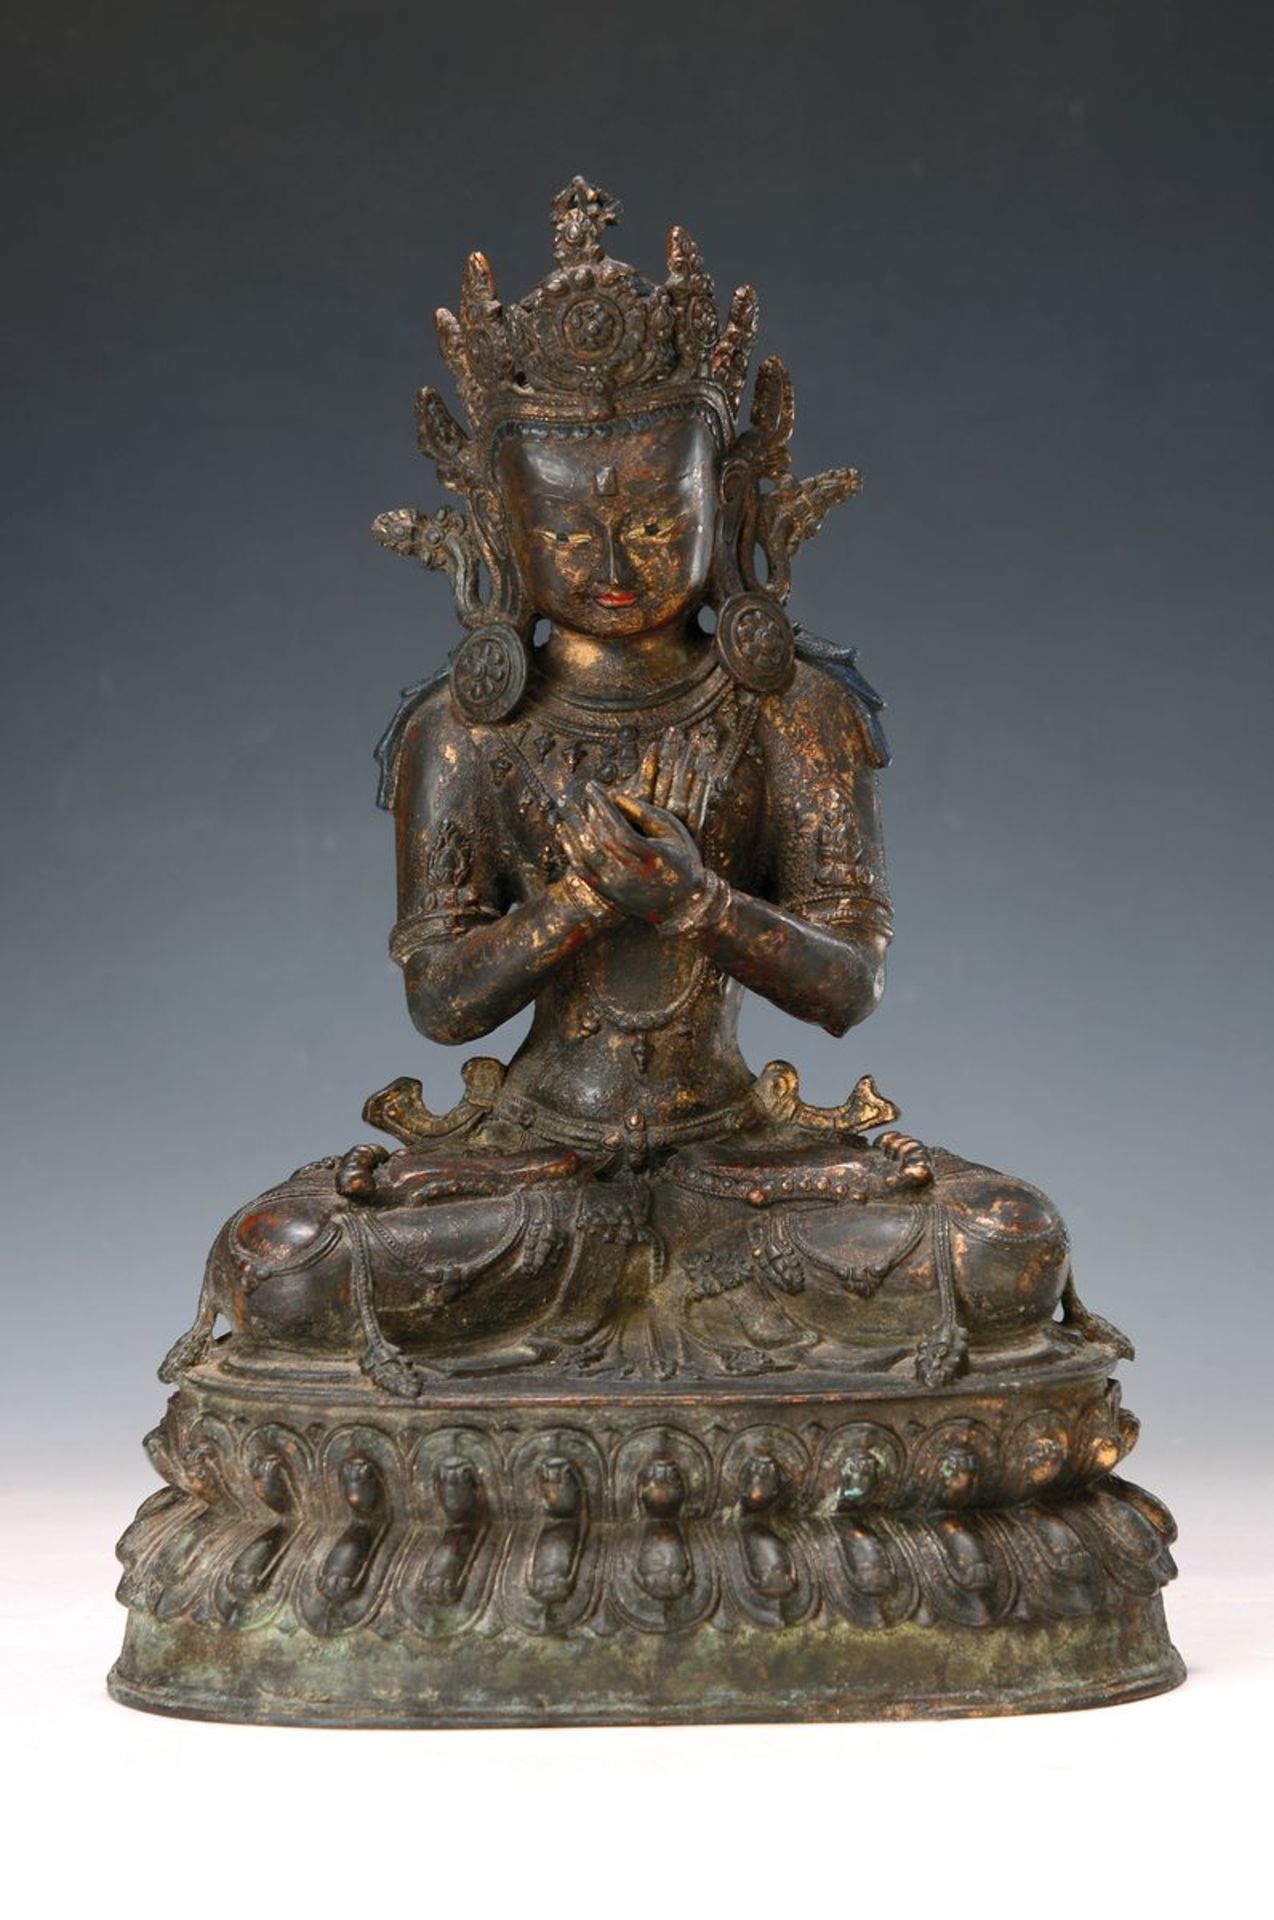 Großer Boddhisatva, sinu-tibetisch, 17./18. Jahrhundert,